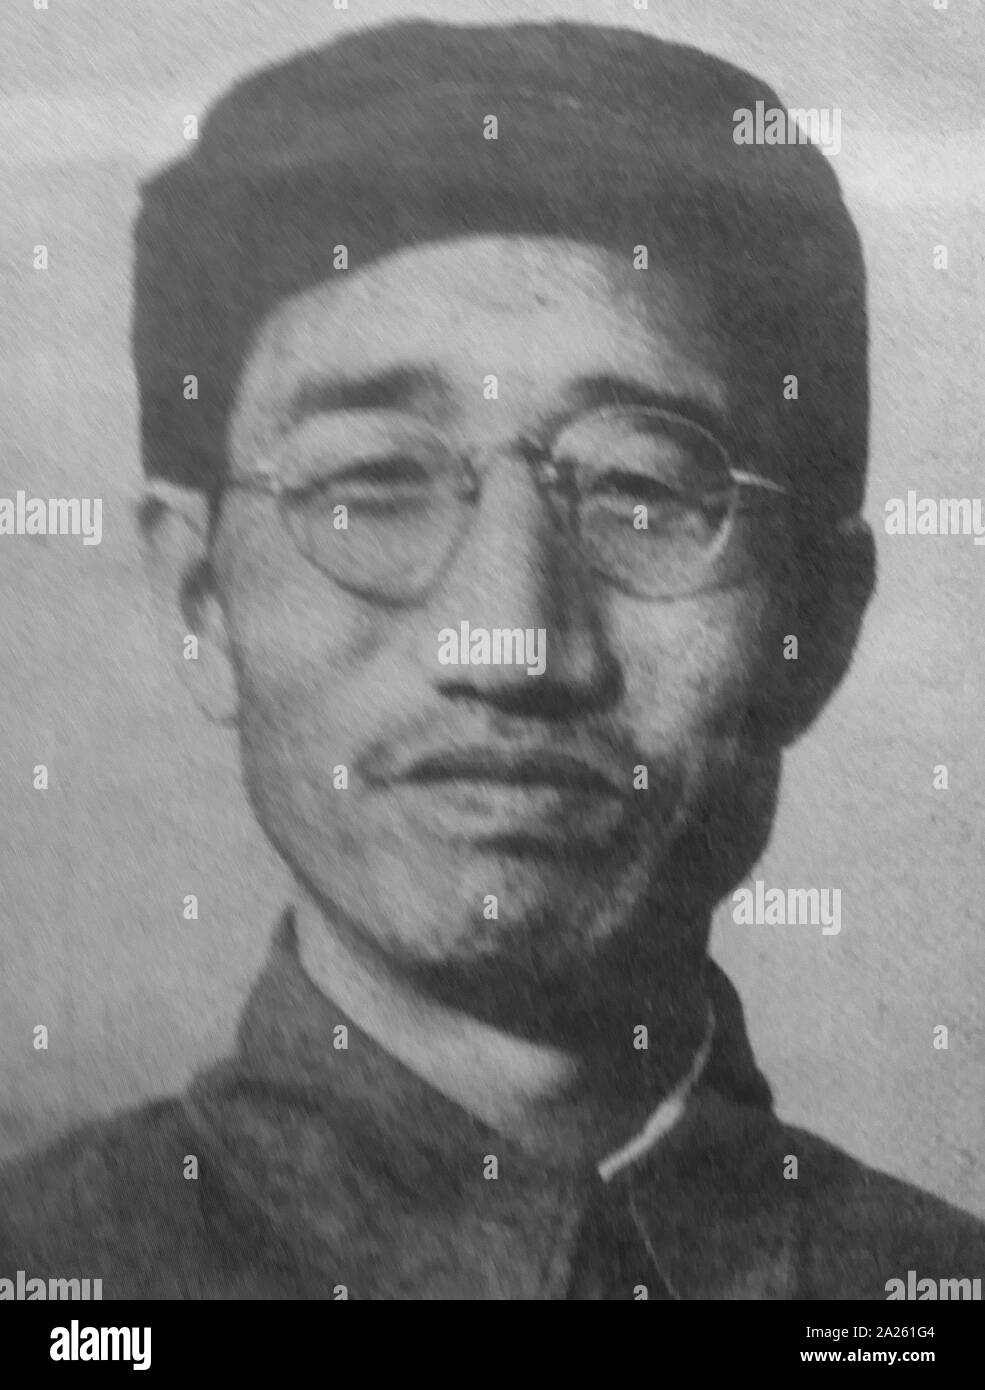 Xu Xiangqian (1901 - 1990) Chinesische Kommunistische militärische Führer und einer der zehn Marschälle der Volksbefreiungsarmee. Stockfoto